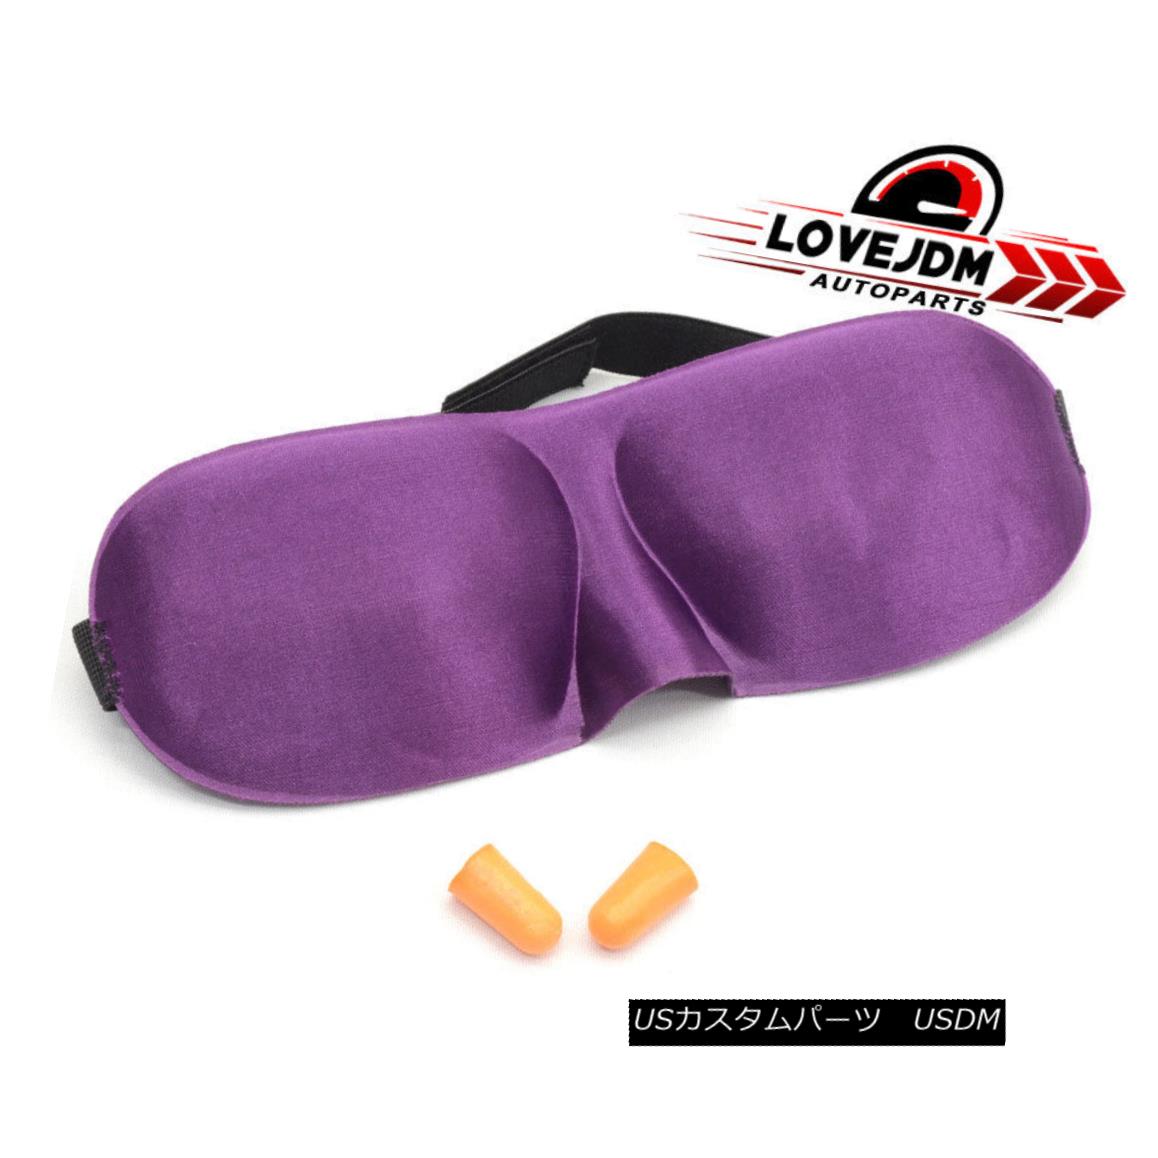 エアロパーツ Purple Color Sleeping Eyepatch Blindfold Earplugs Shade Travel Sleep Aid Cover パープルカラースリーピングアイパッチ目隠し耳栓シェードトラベル睡眠補助カバー